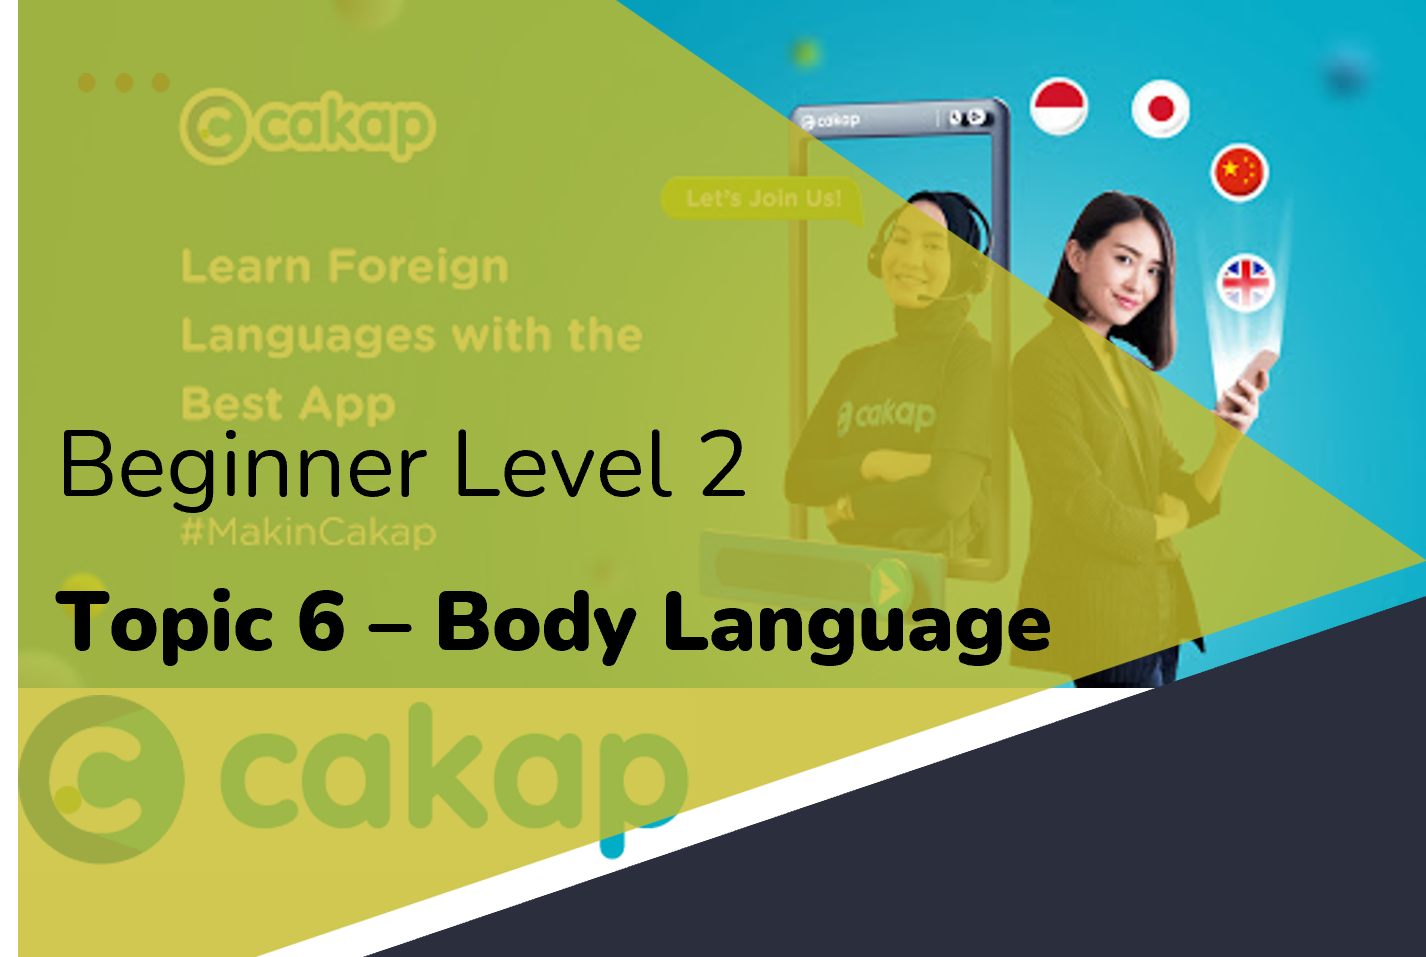 Beginner 2: Topic 6 - Body Language